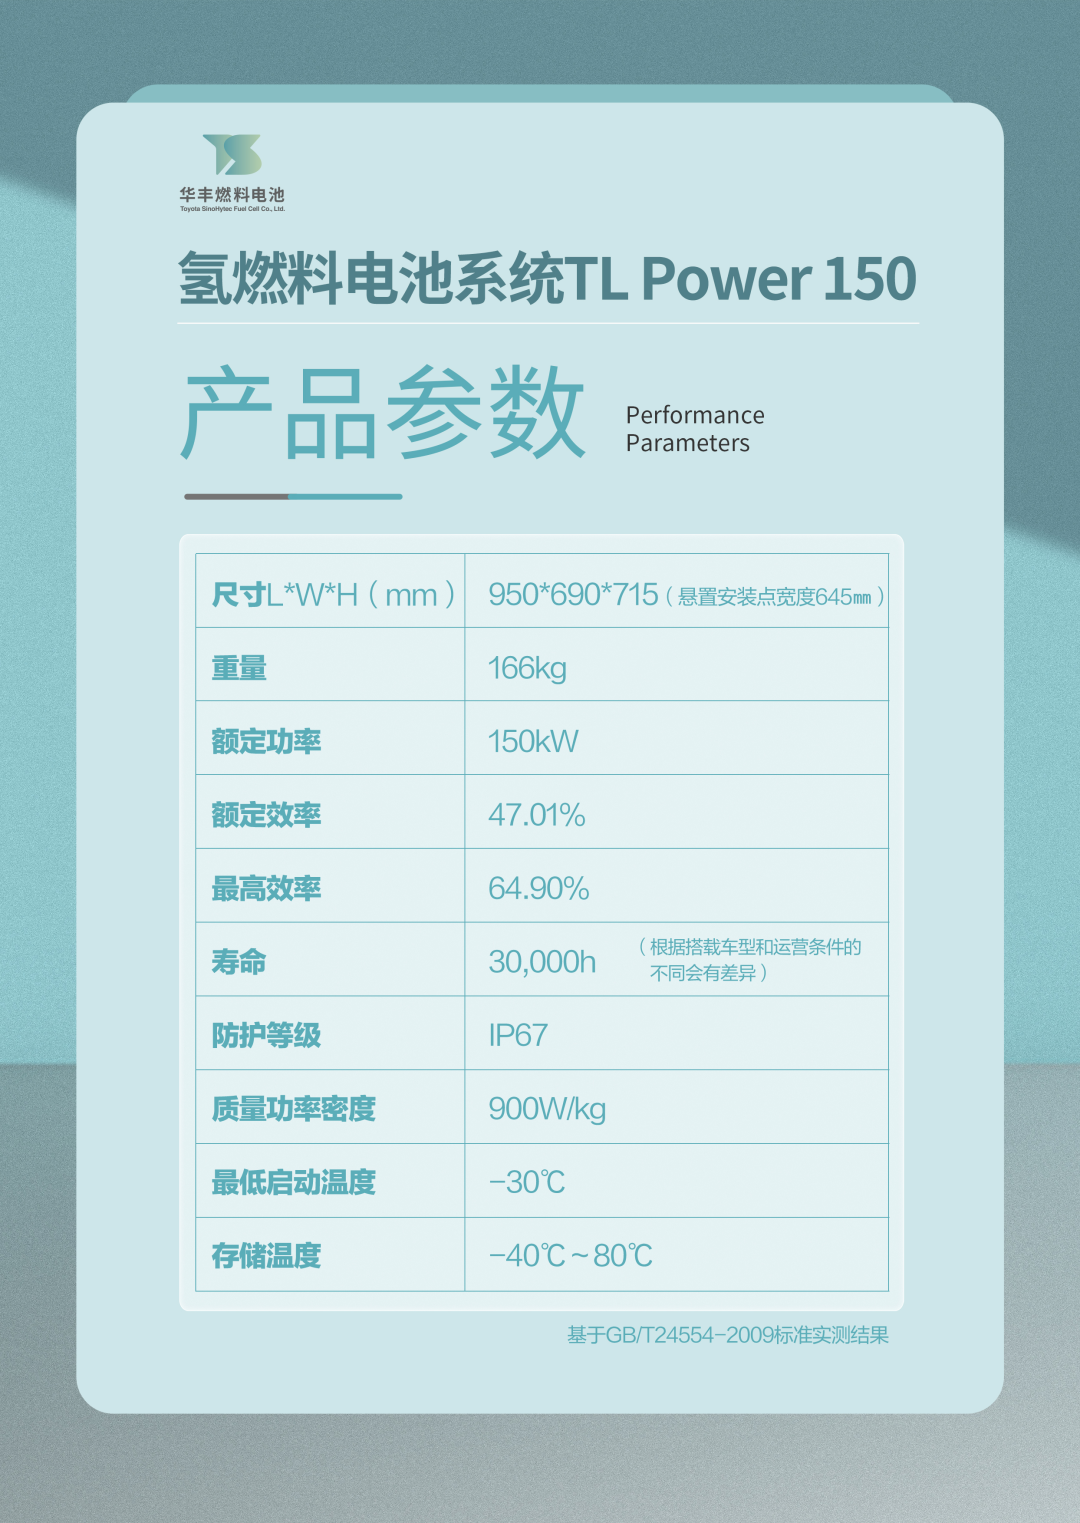 亿华通与丰田合作再结硕果 新一代氢燃料电池系统TL Power150发布